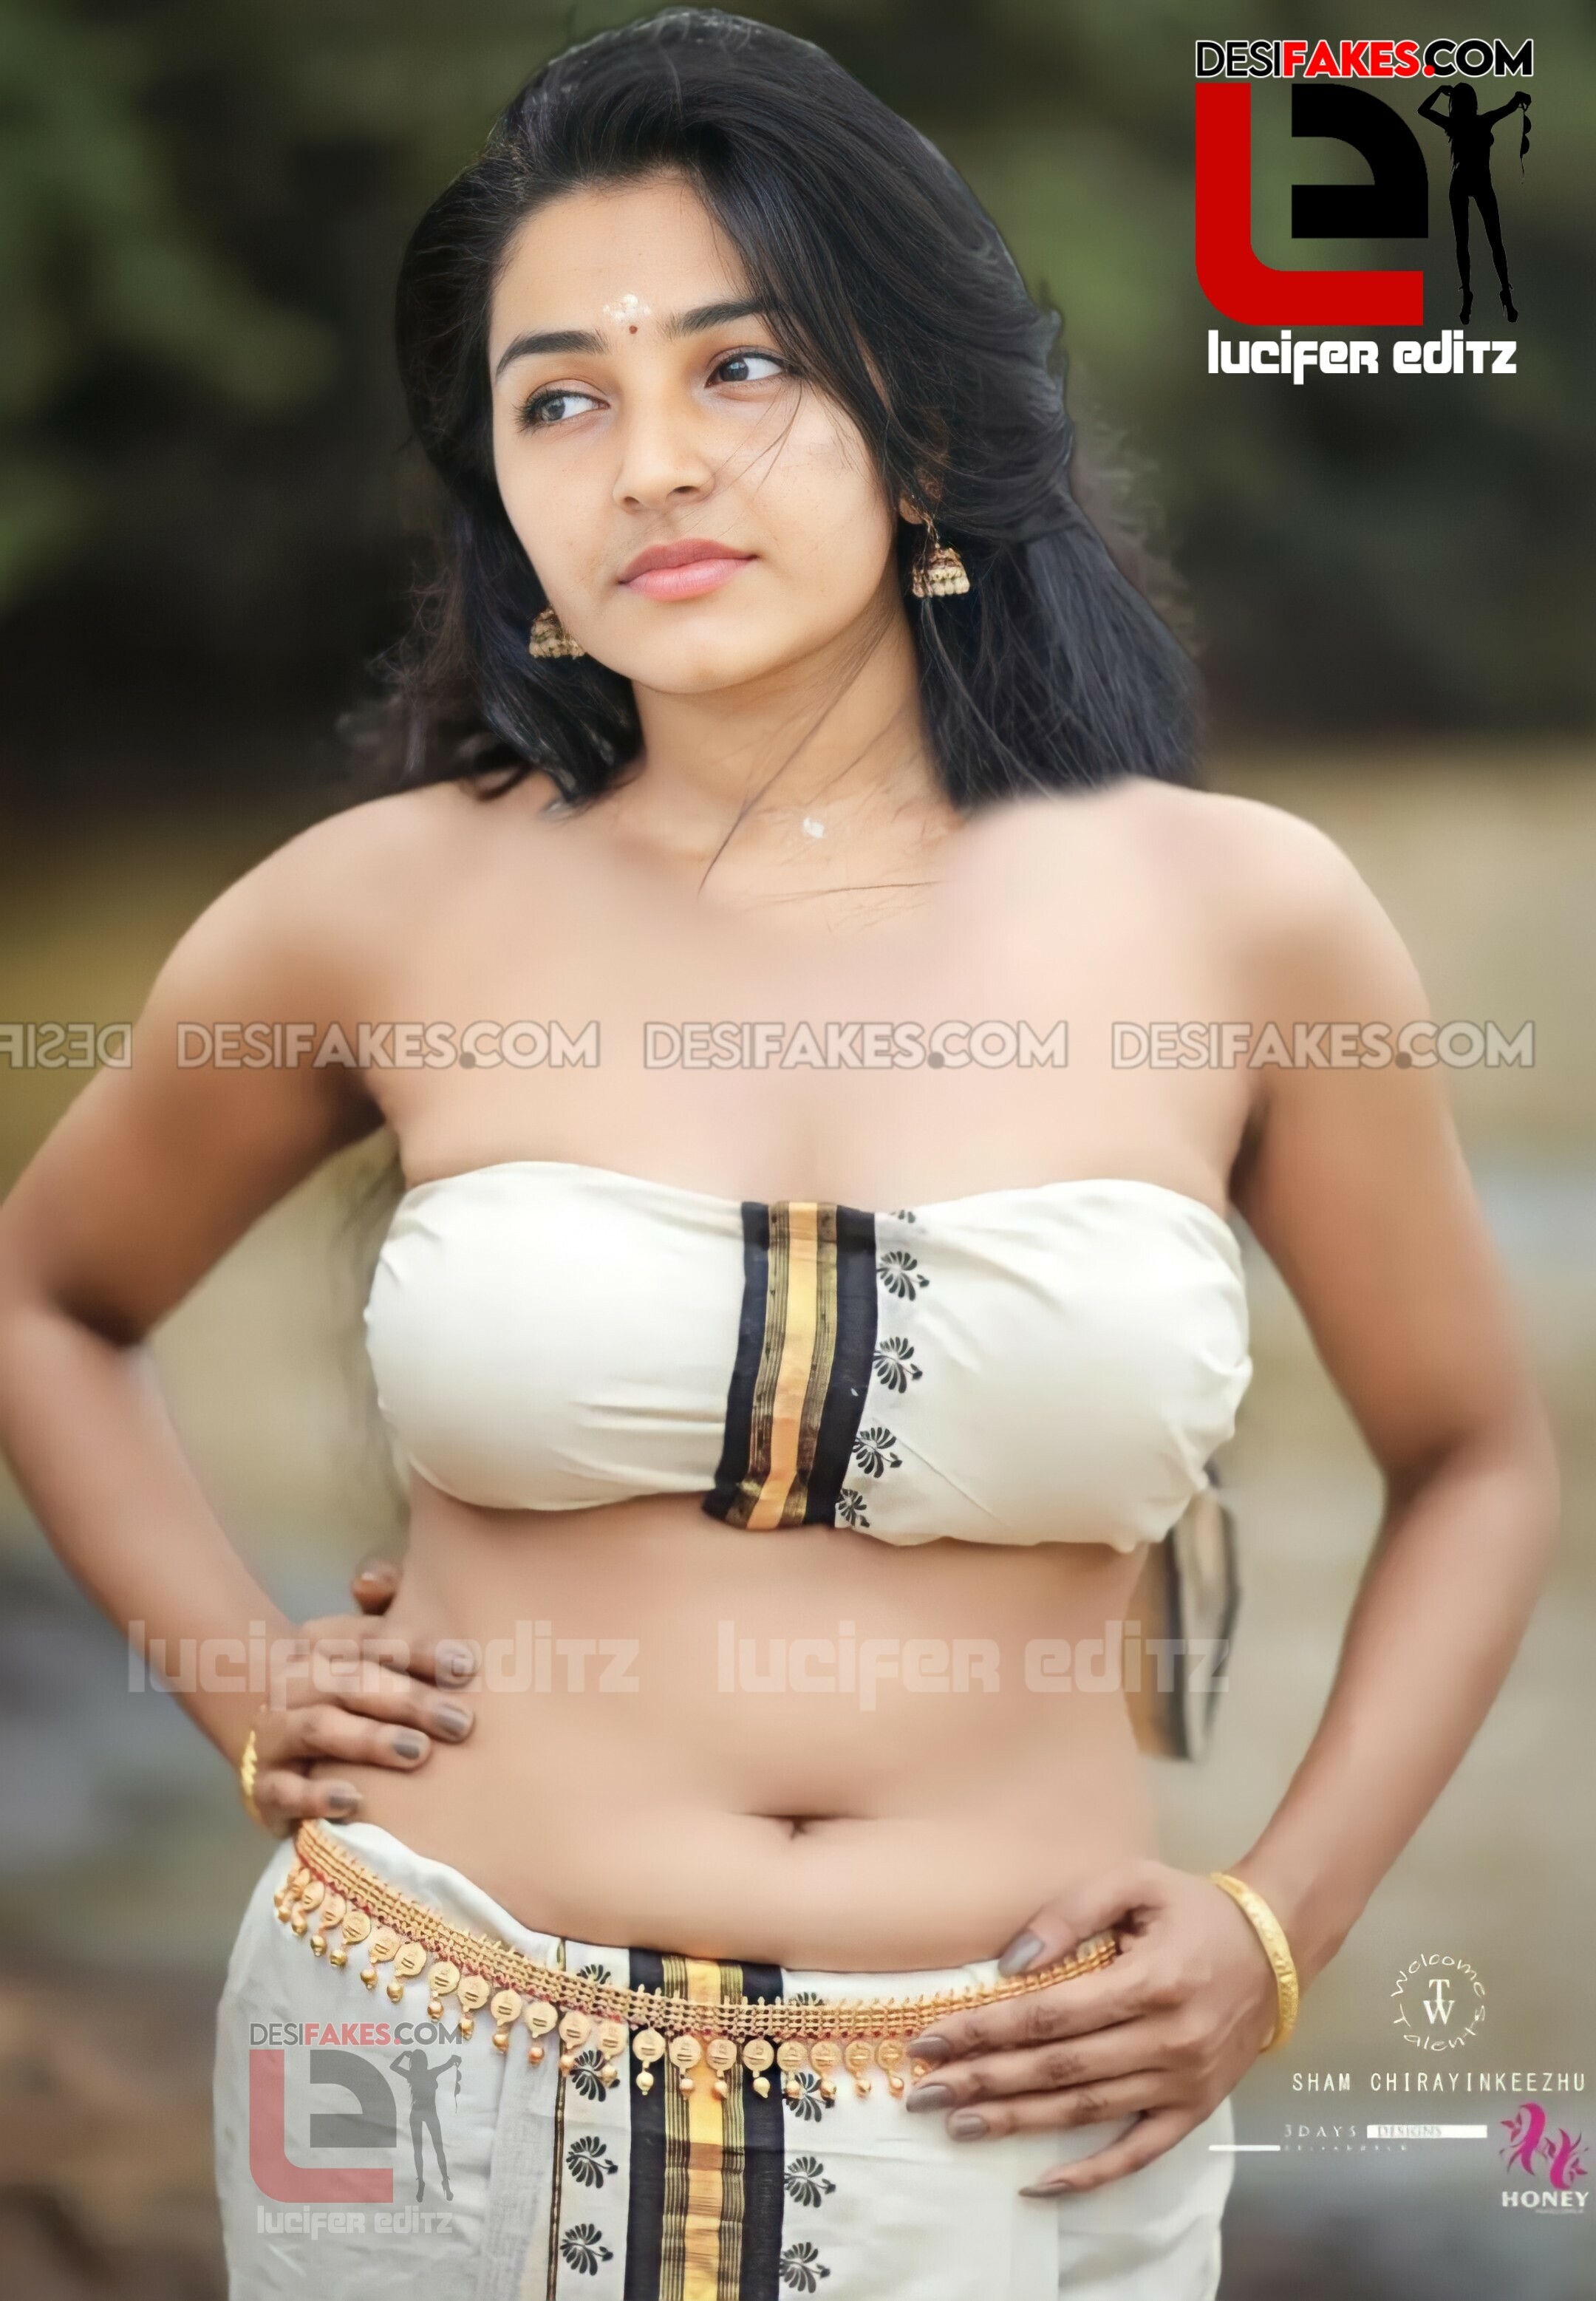 Hot Actress Rajisha Vijayan Photoshoot Naked Sex Images Hq Desi Fakes